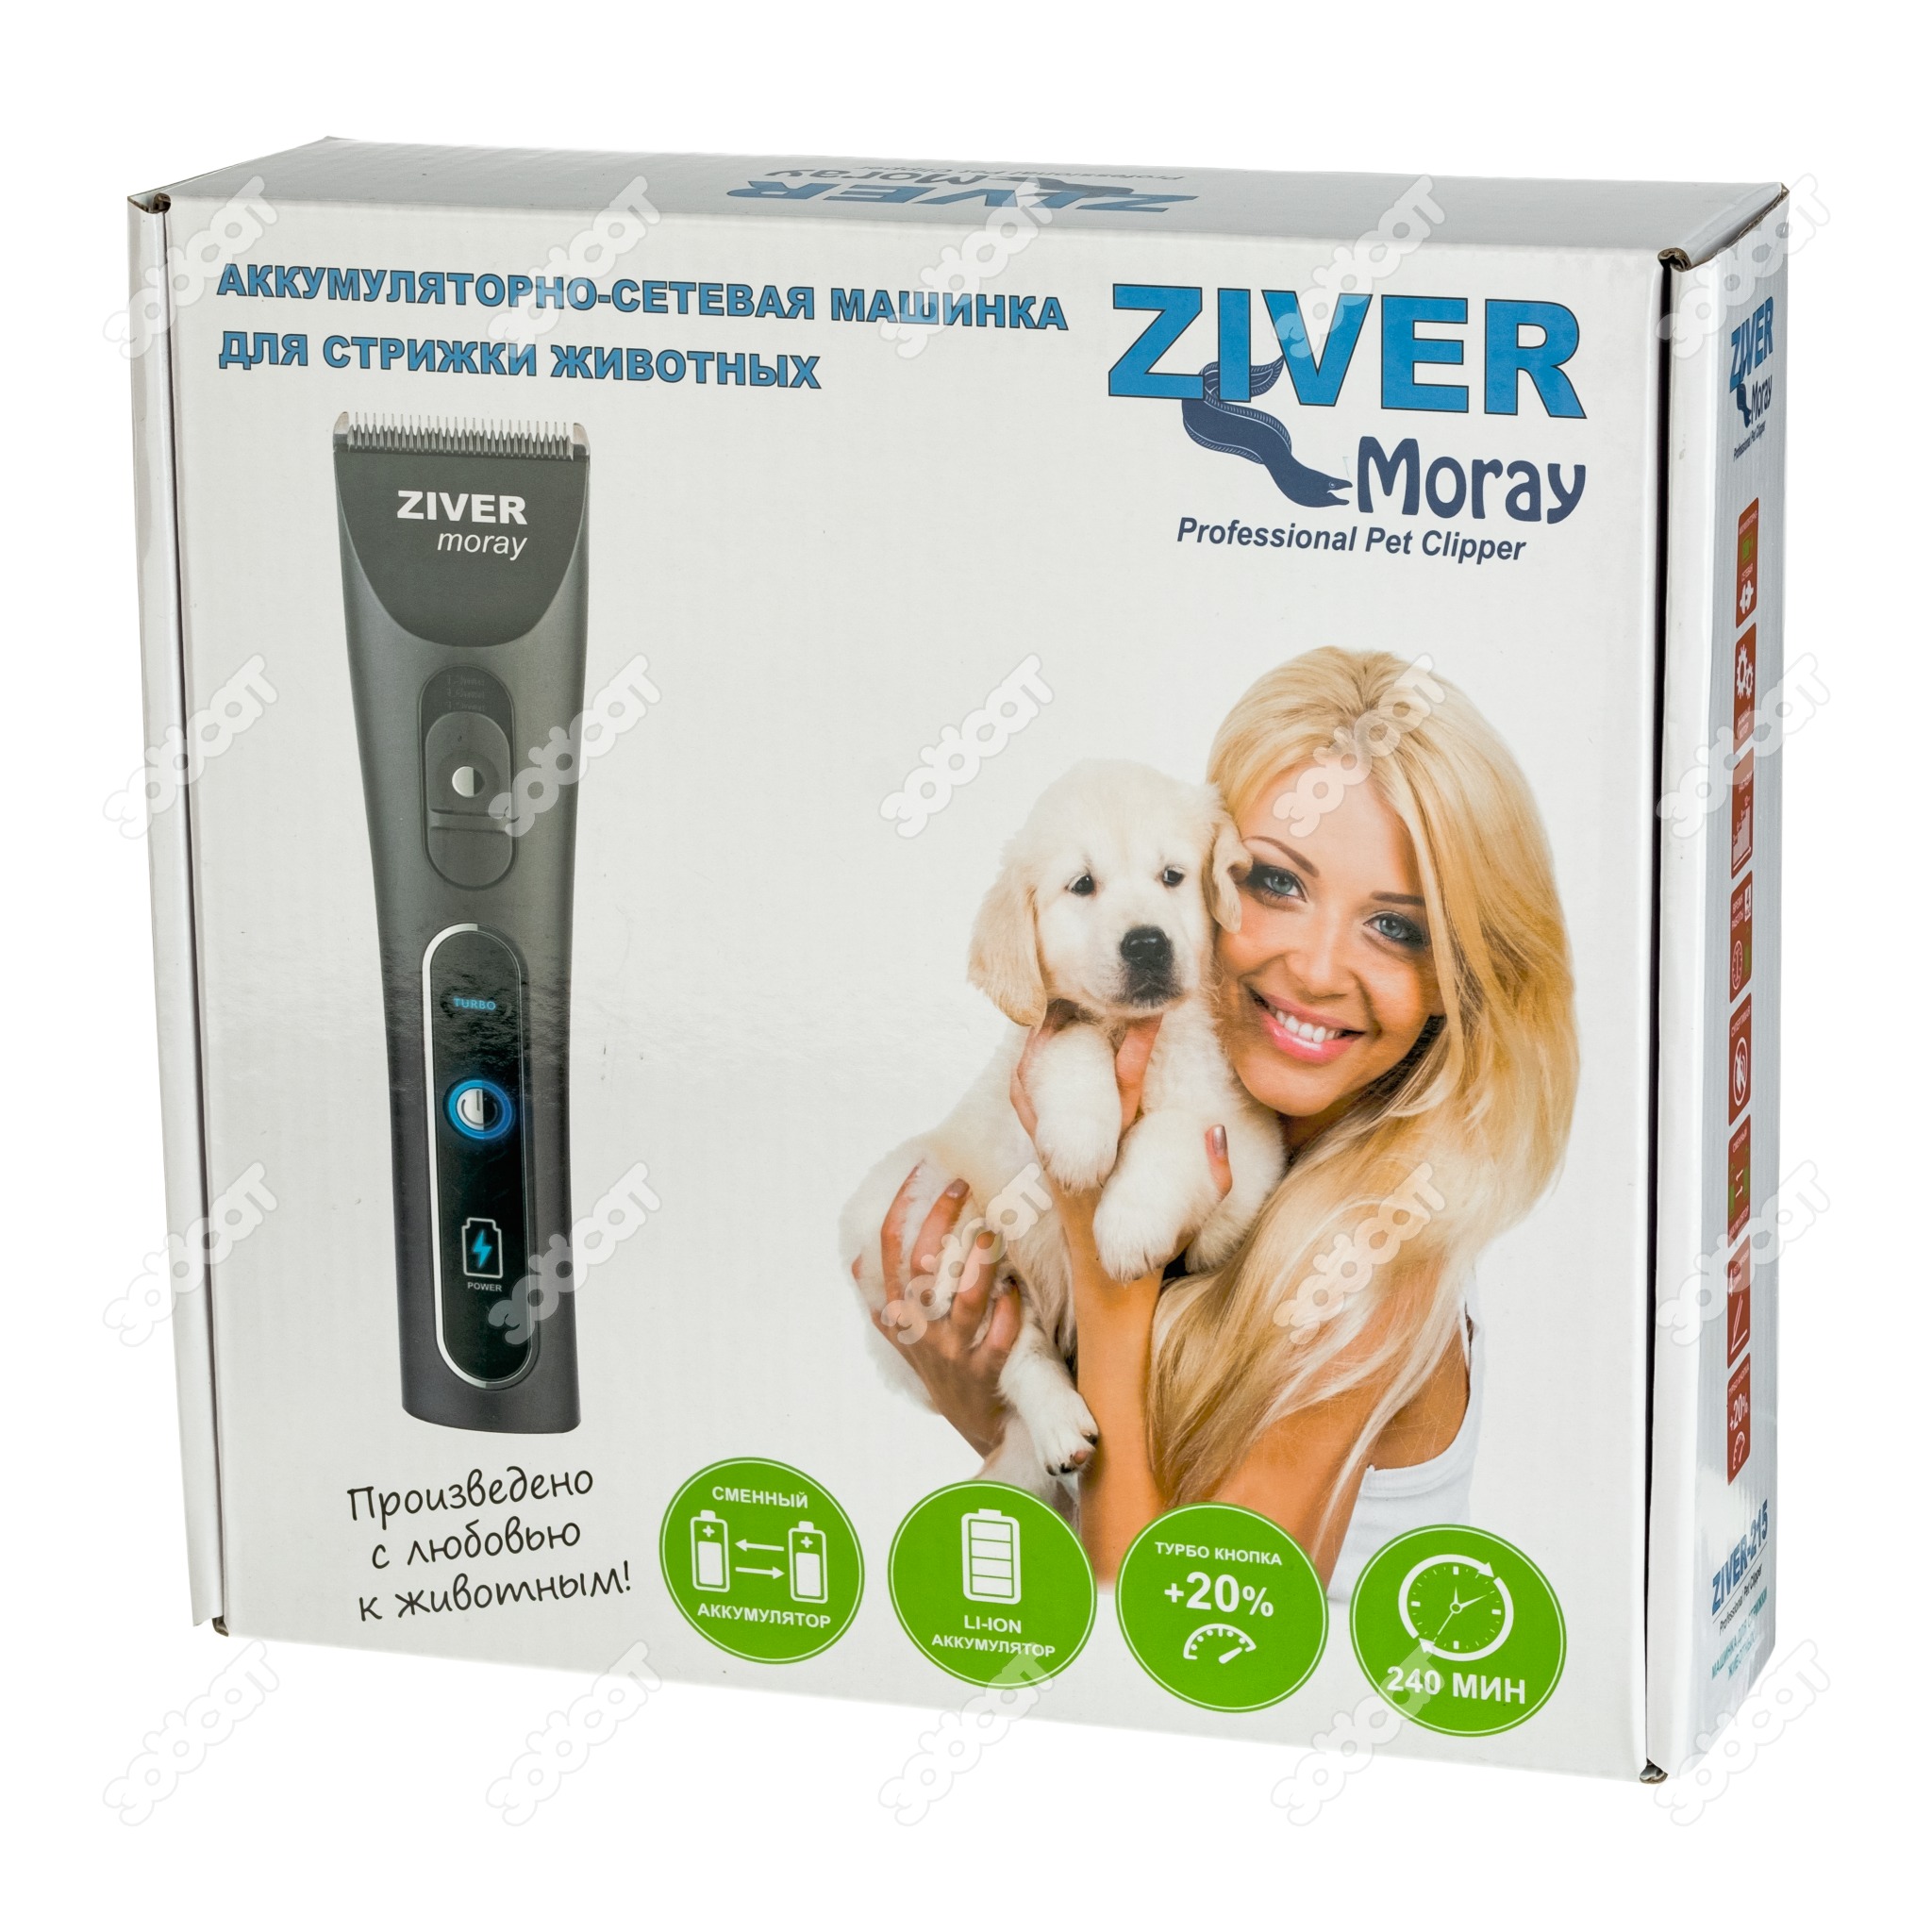 Ziver - 215 Morey Машинка аккумуляторно-сетевая для стрижки животных